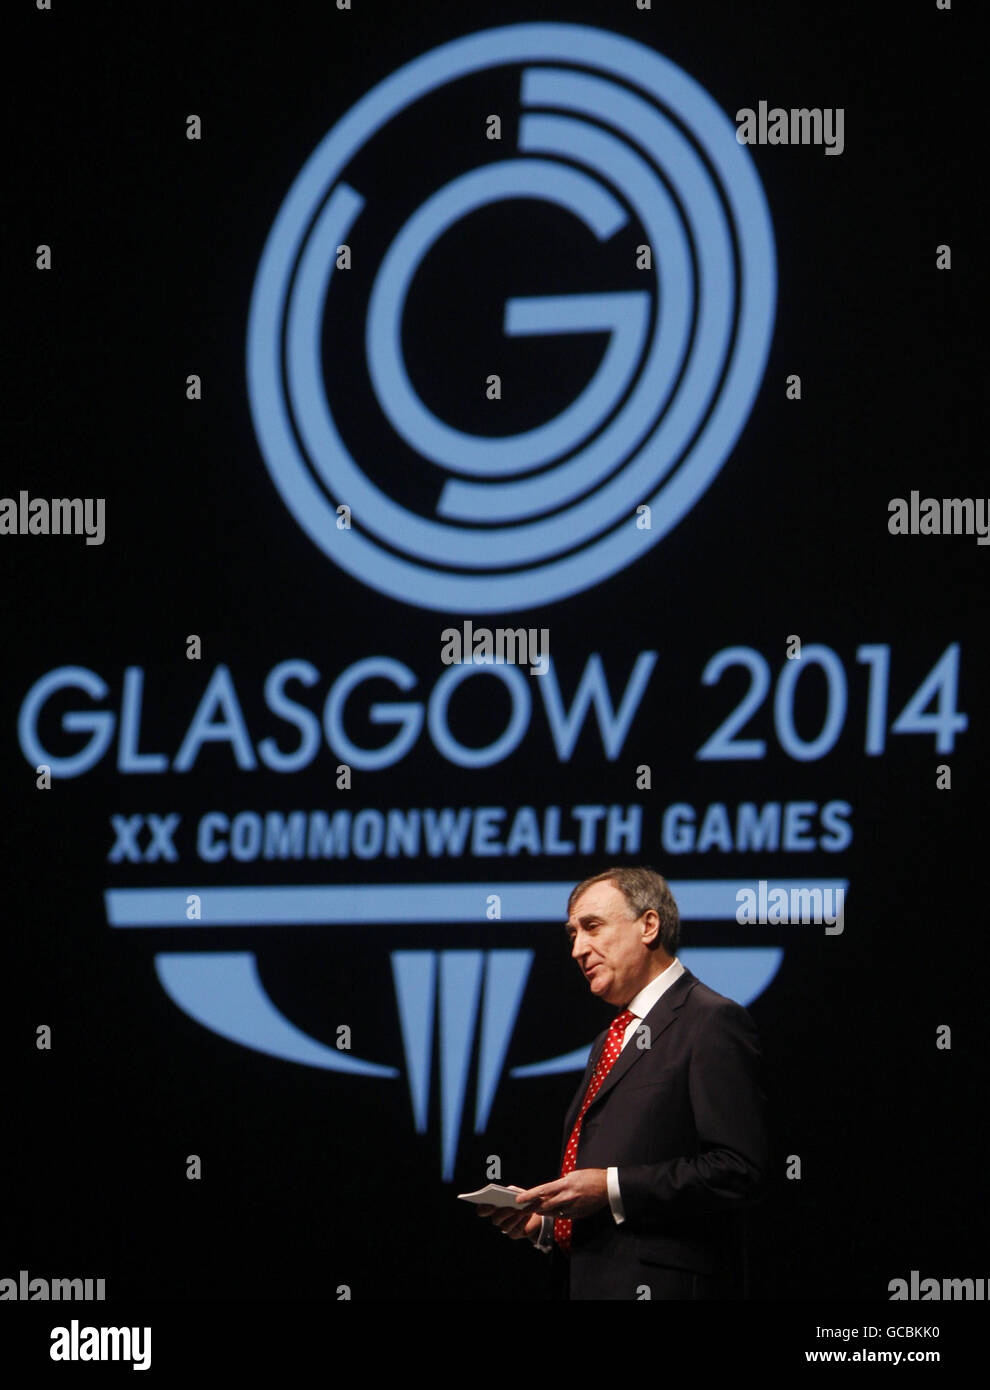 Glasgow 2014 Organisationskomitee Chief Executive John Scott, hält eine Rede vor dem neuen Glasgow 2014 Commonwealth Games Logo während seiner Einführung im Clyde Auditorium in Glasgow. Stockfoto